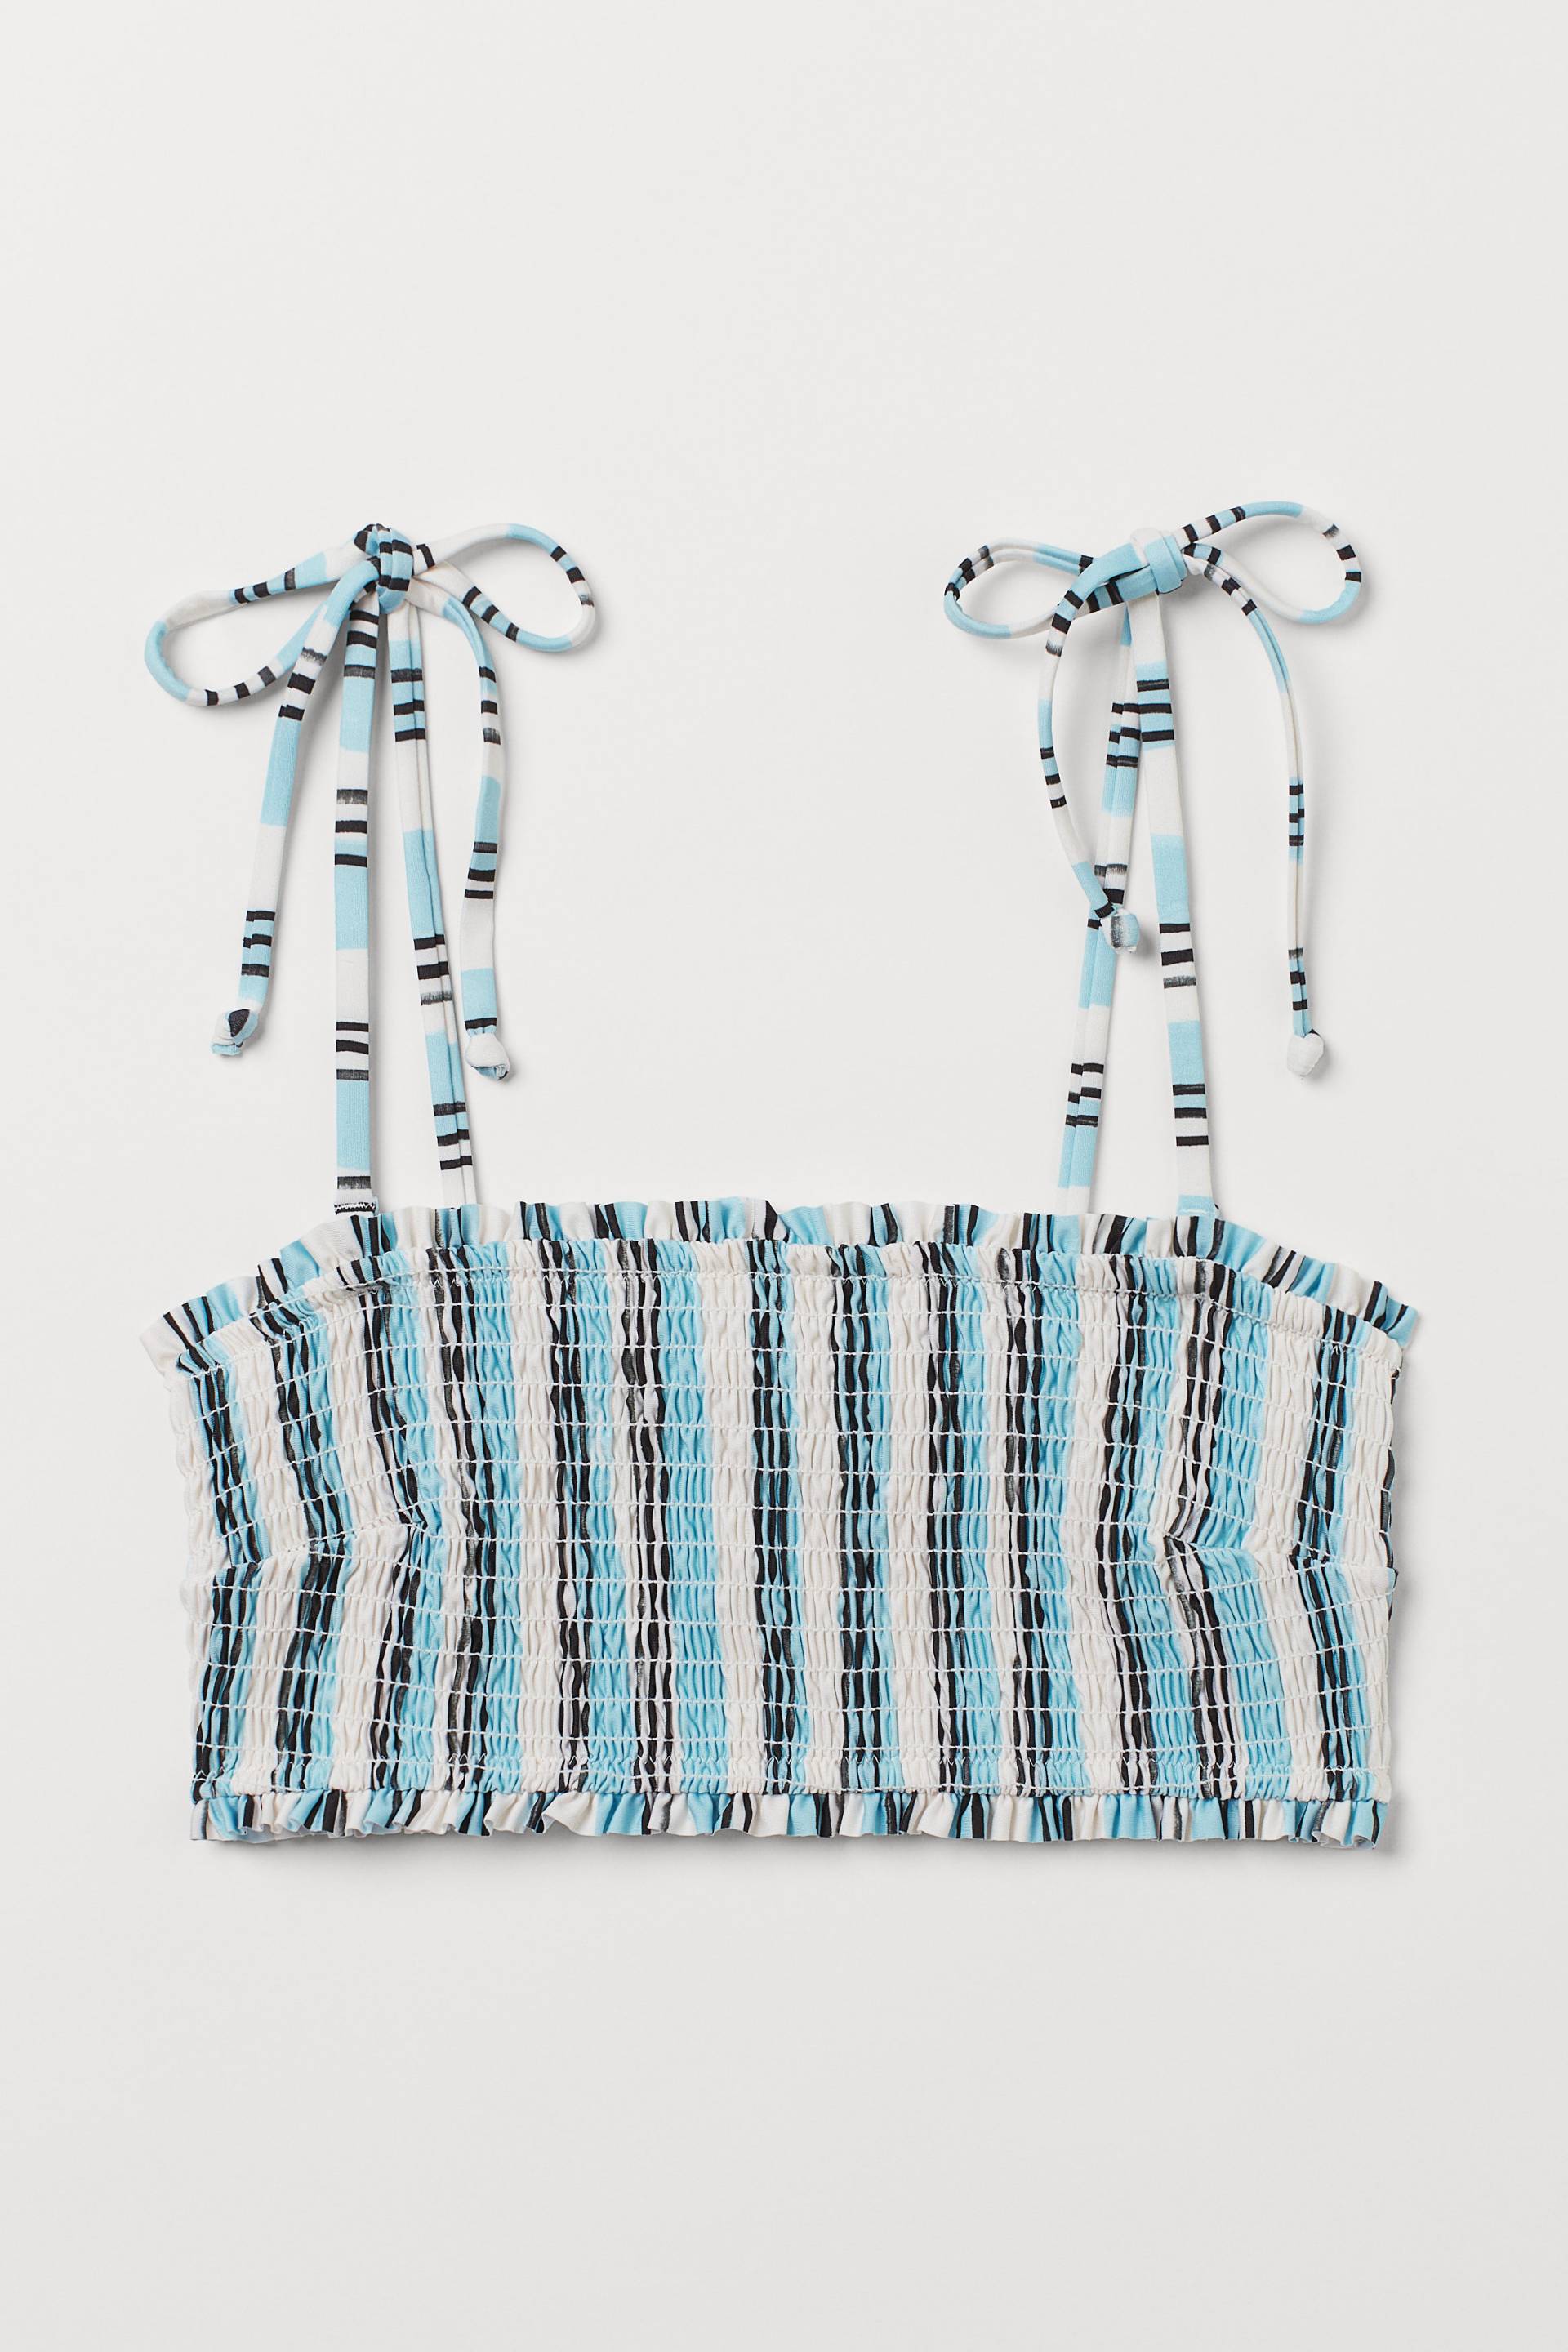 H&M Gesmoktes Bikinitop Weiß/Türkis gestreift, Bikini-Oberteil in Größe 34. Farbe: White/turquoise striped von H&M